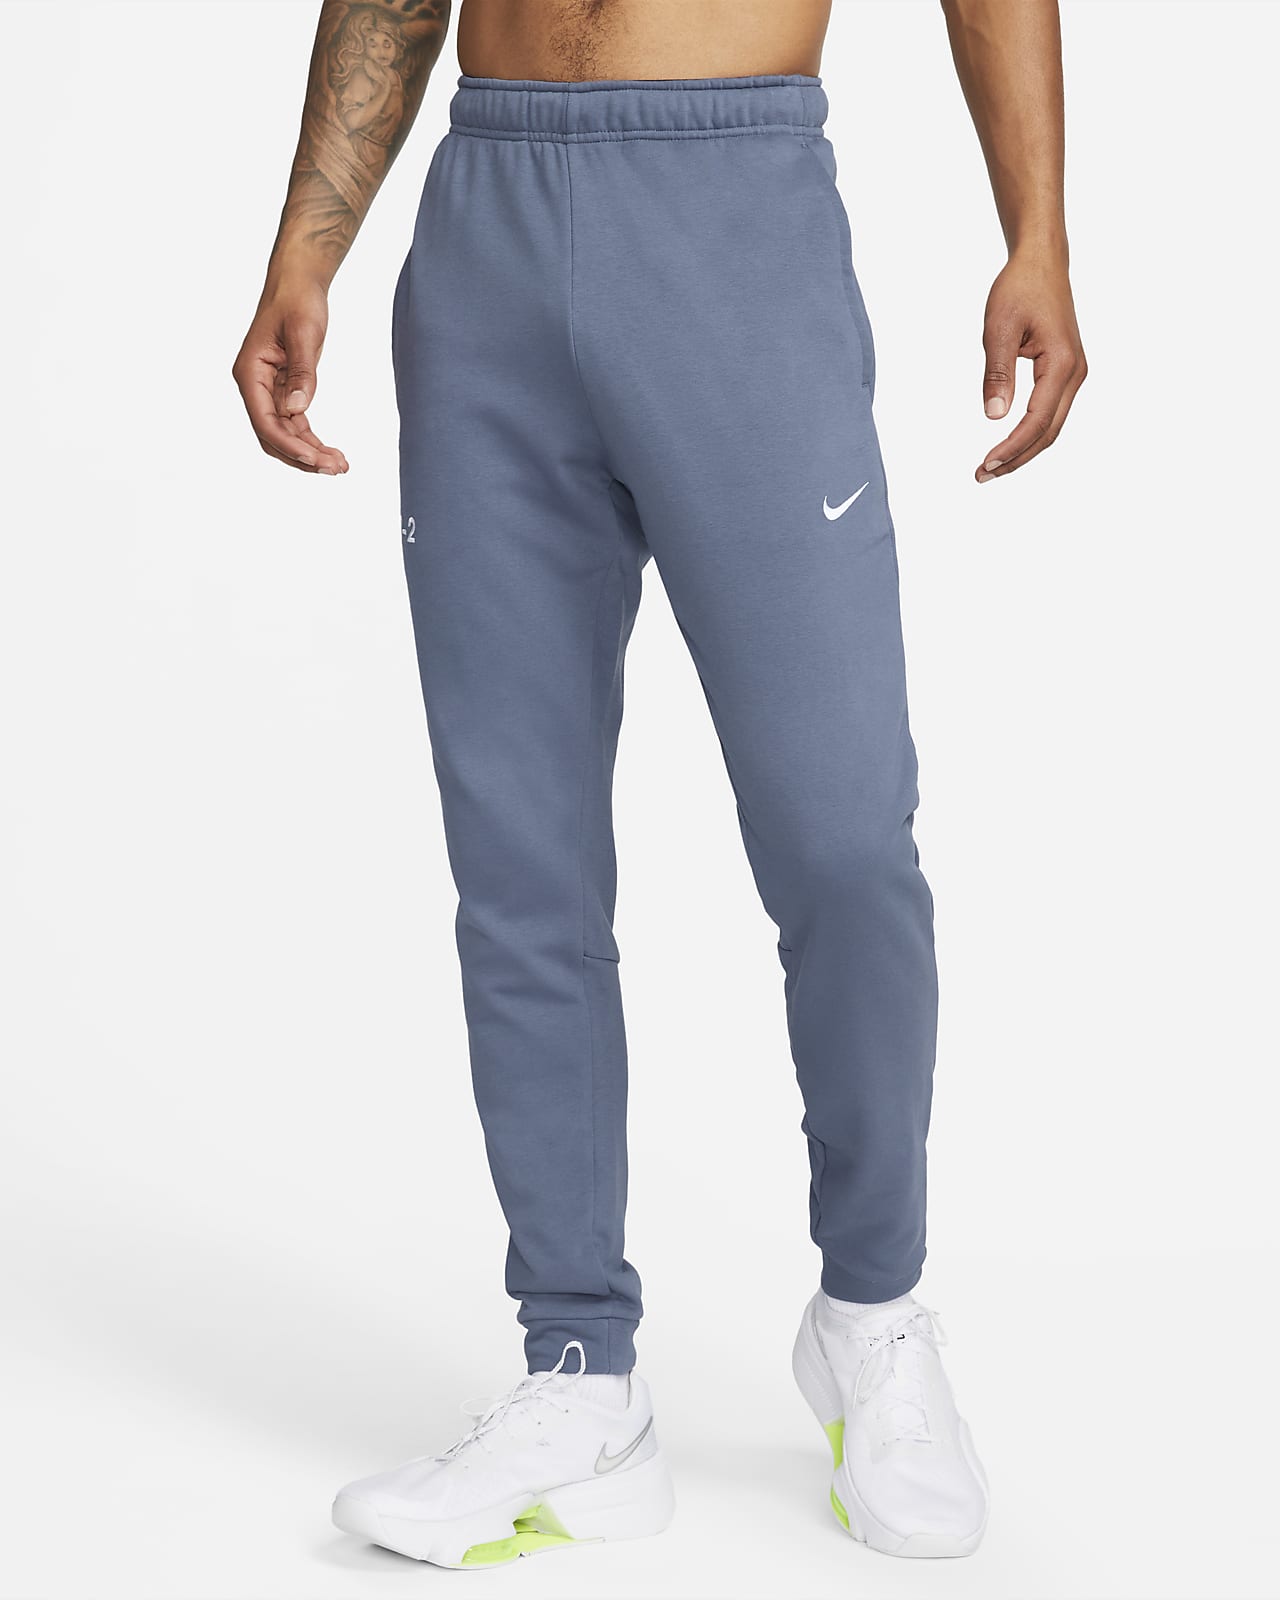 Pants de fitness entallados para hombre Nike Dri-FIT Studio '72